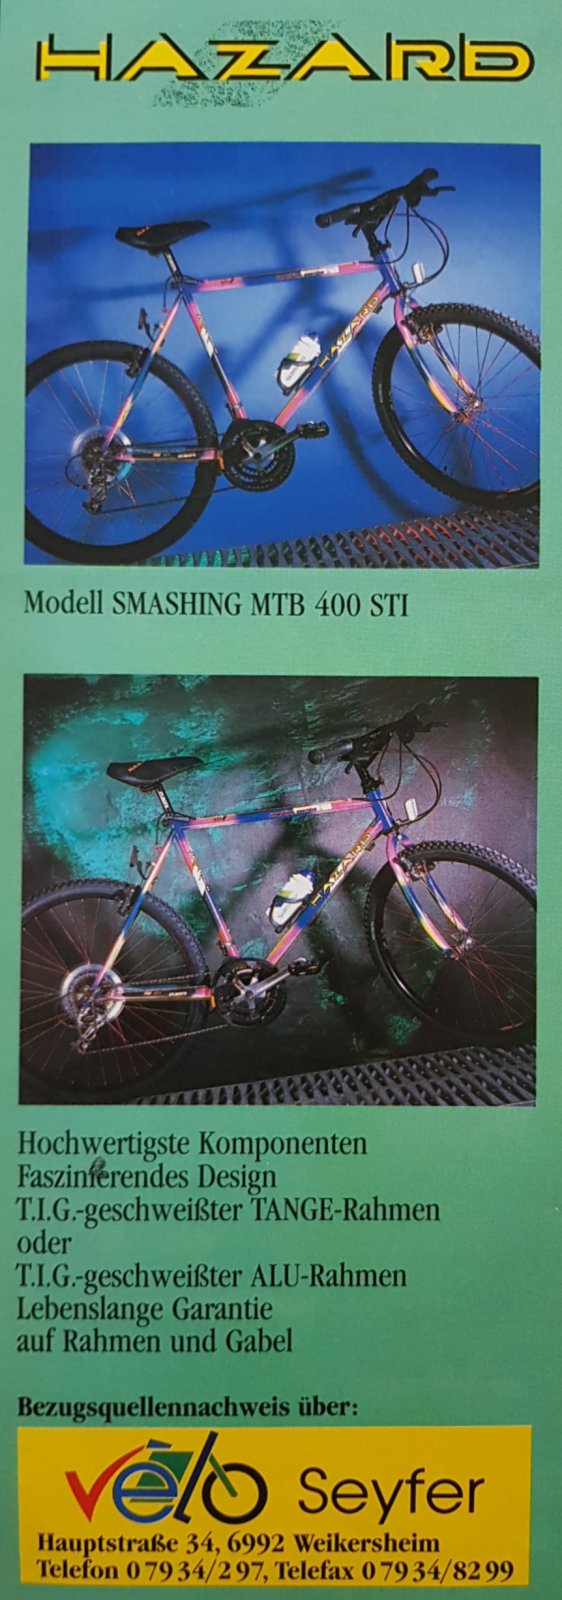 Hazard Ad aus Bike 9 1992.jpg